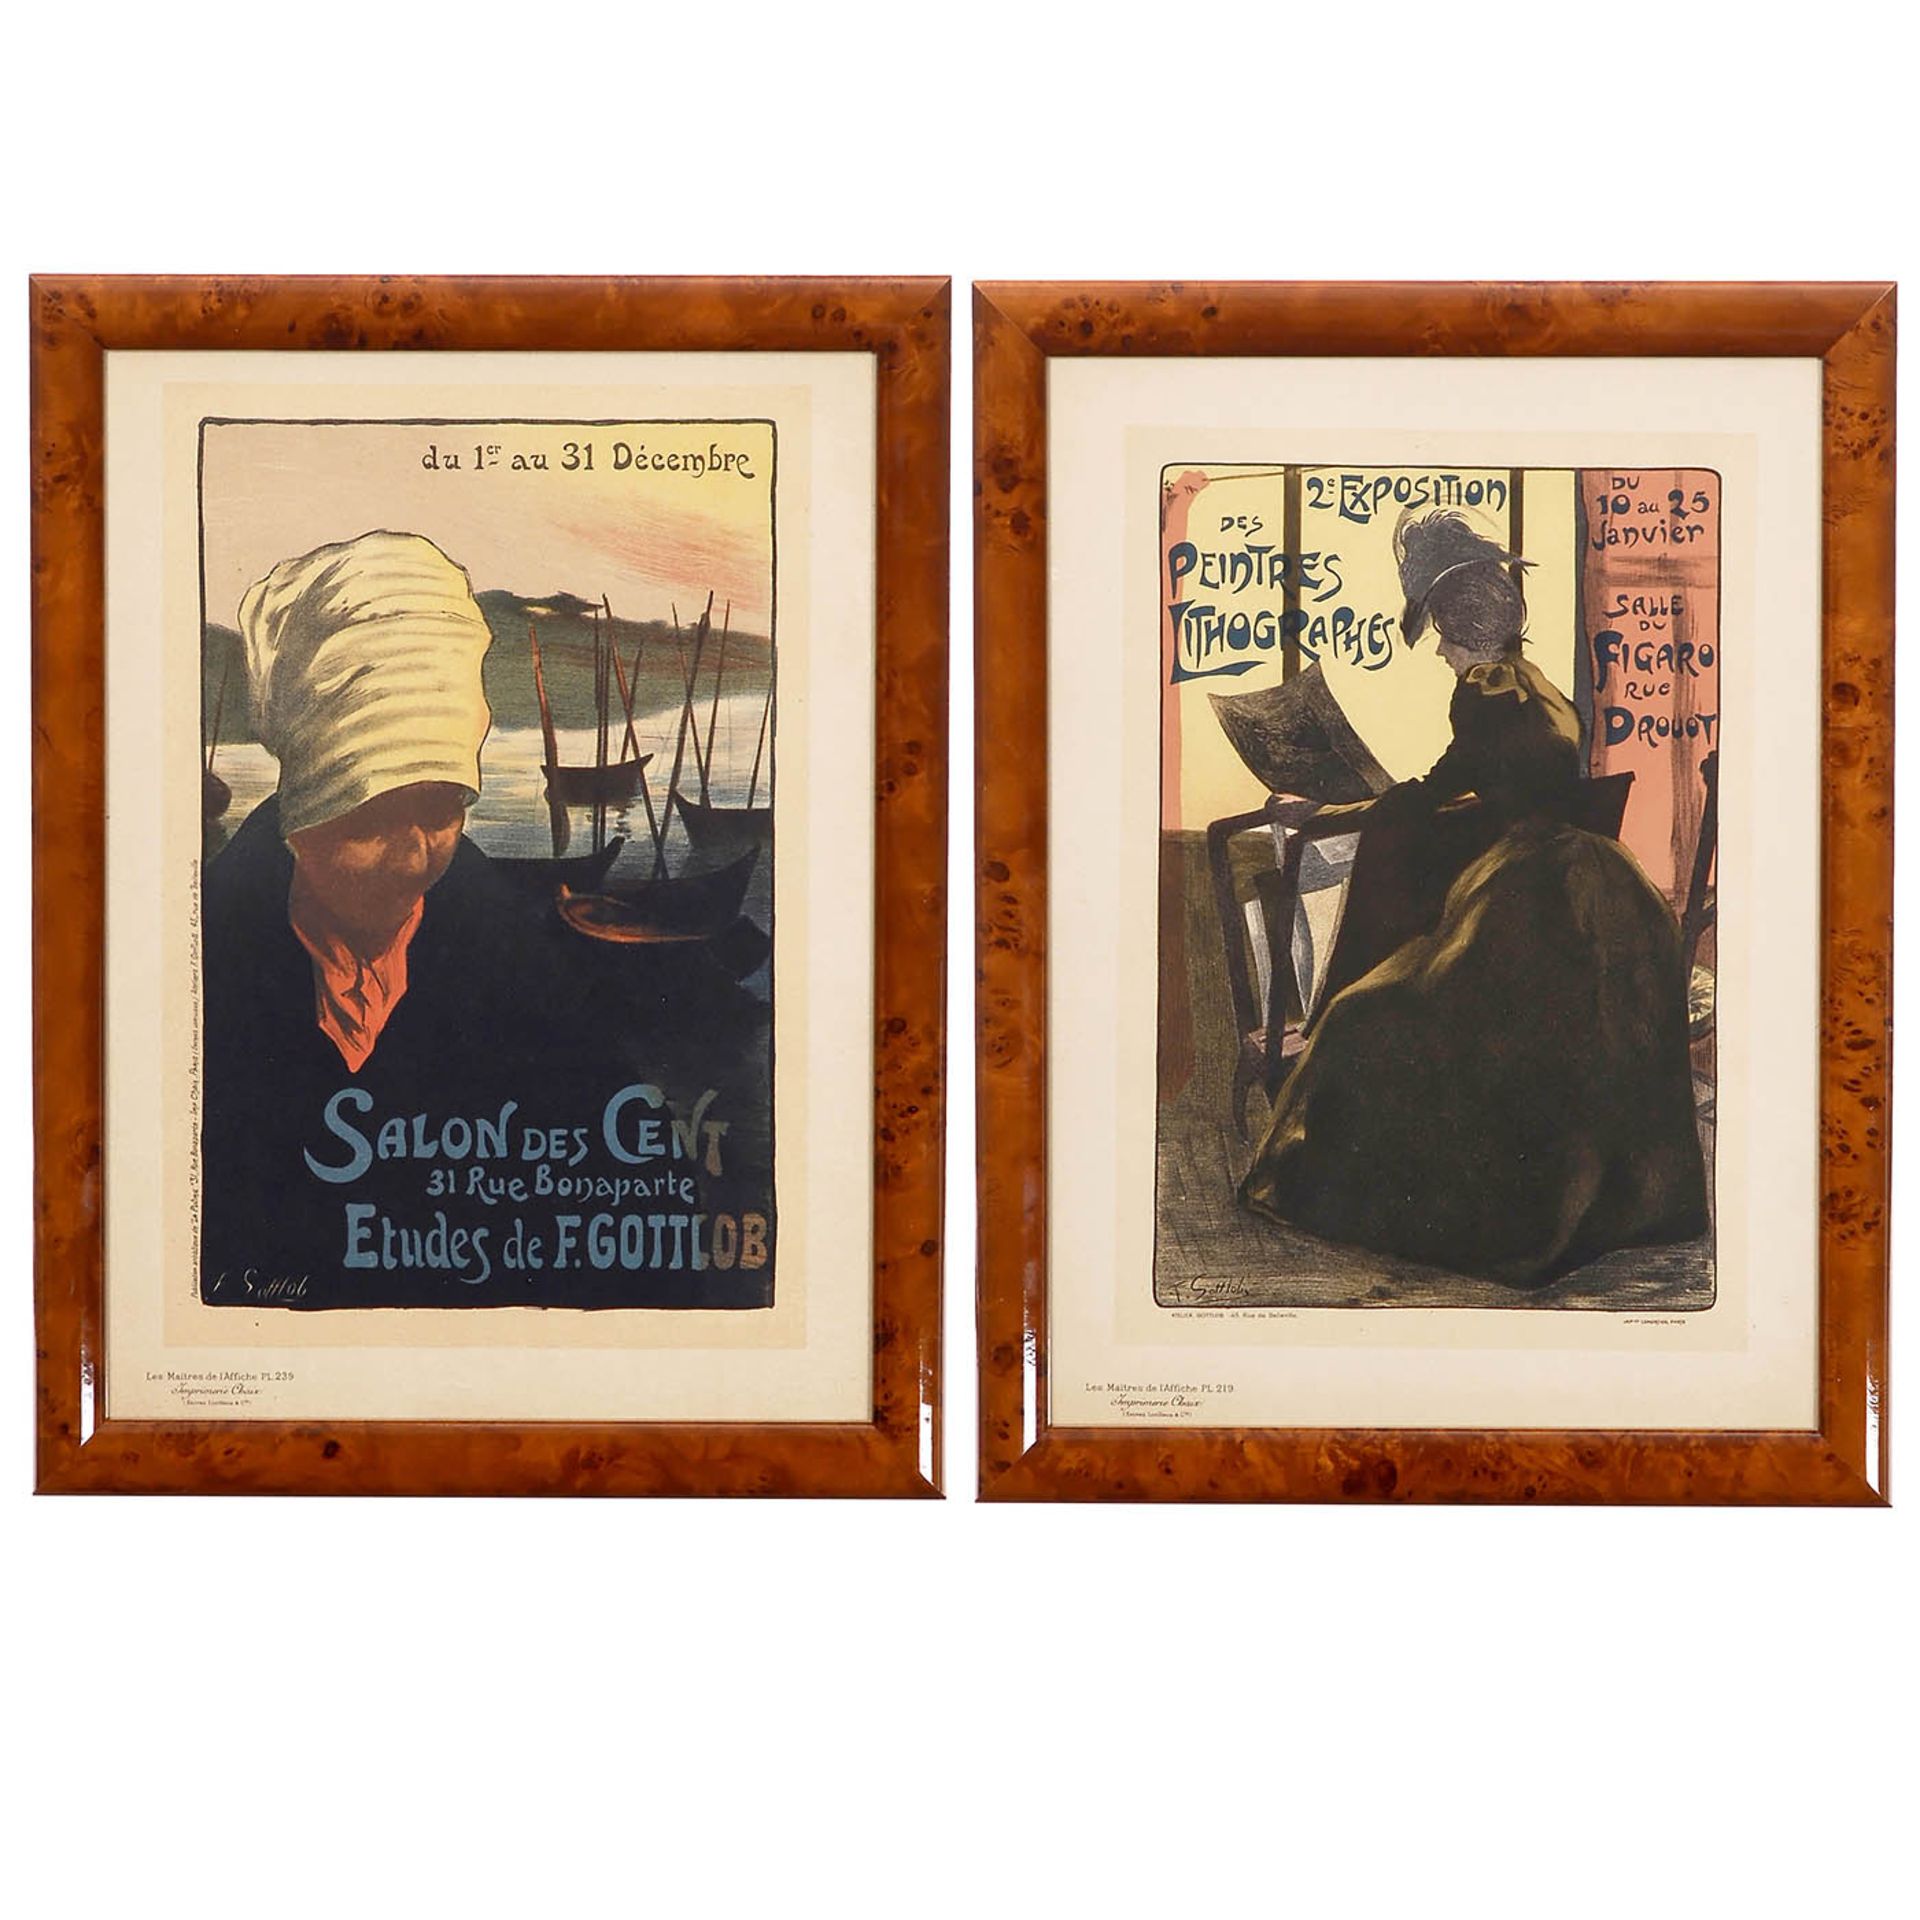 2 Original Lithographs from the Series "Les Maitres de l'Affiche", 1895-1900